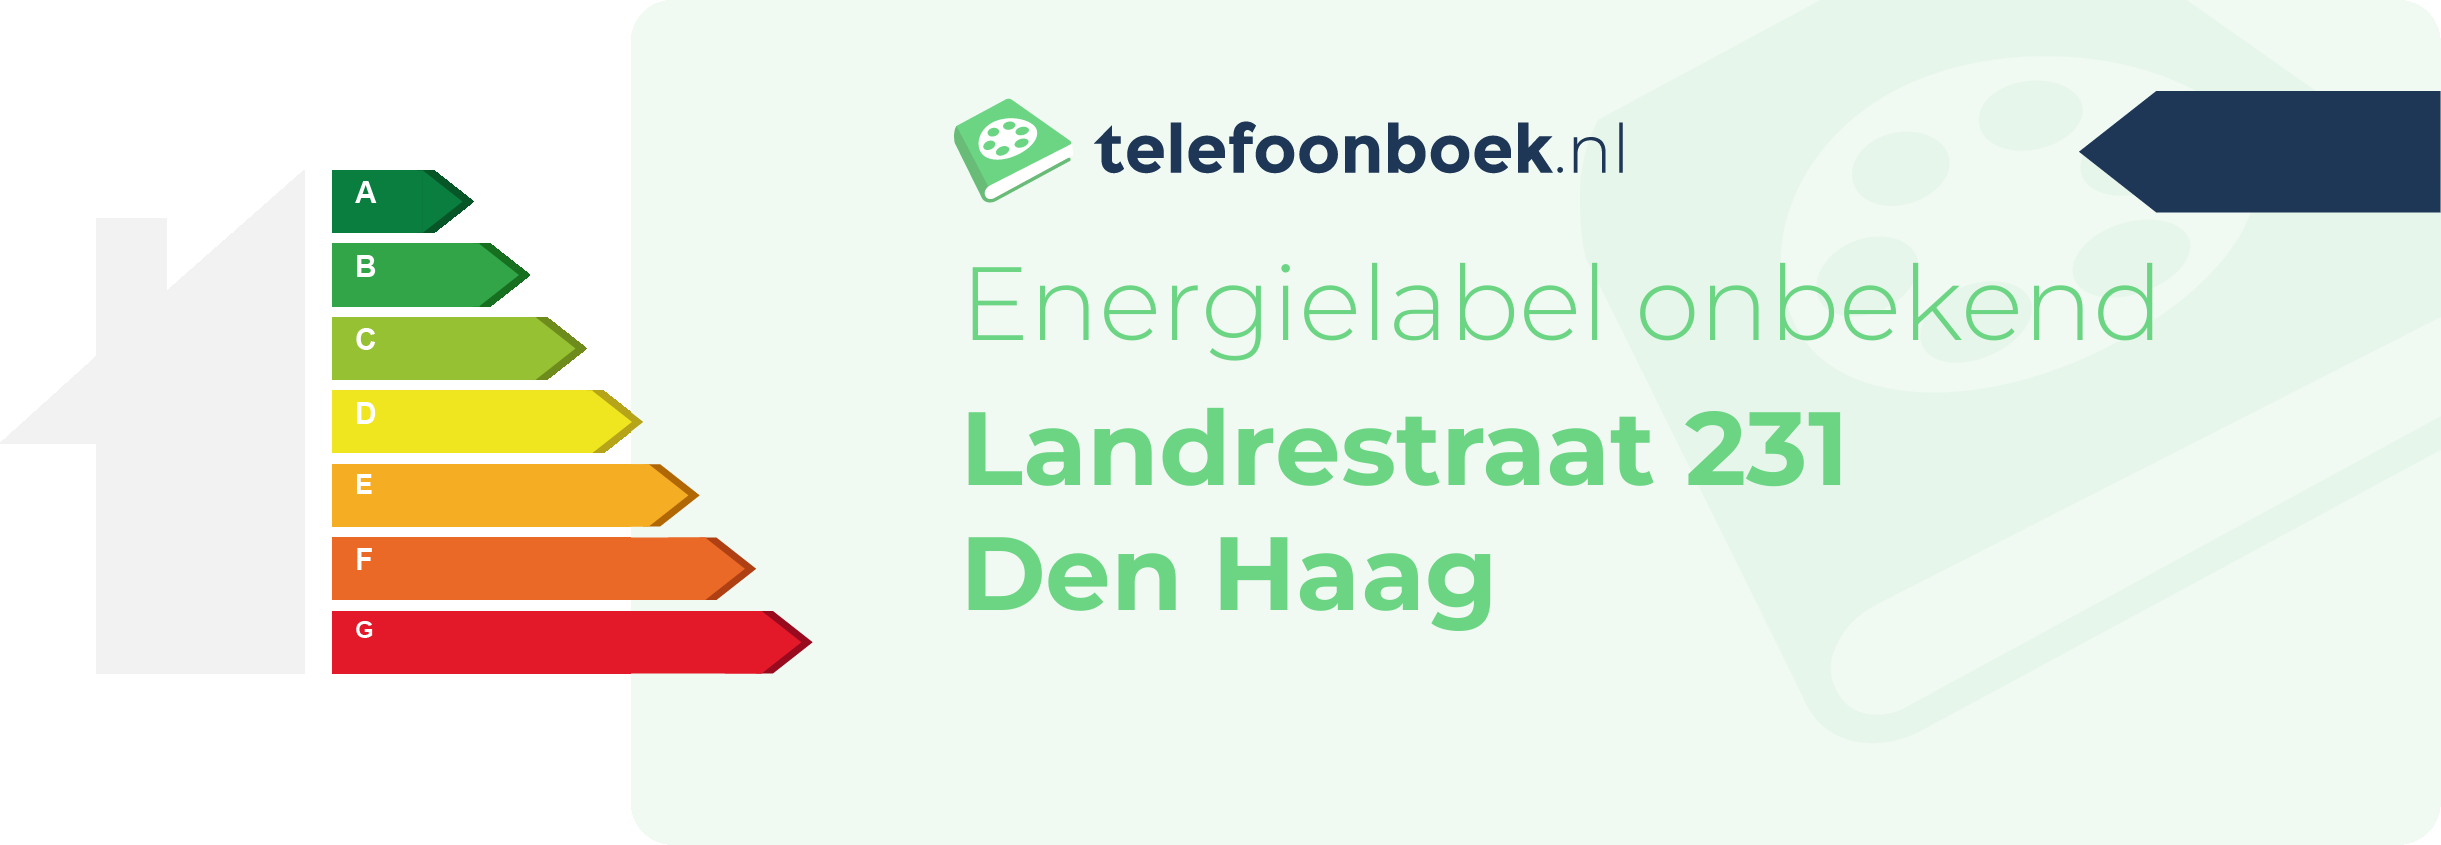 Energielabel Landrestraat 231 Den Haag